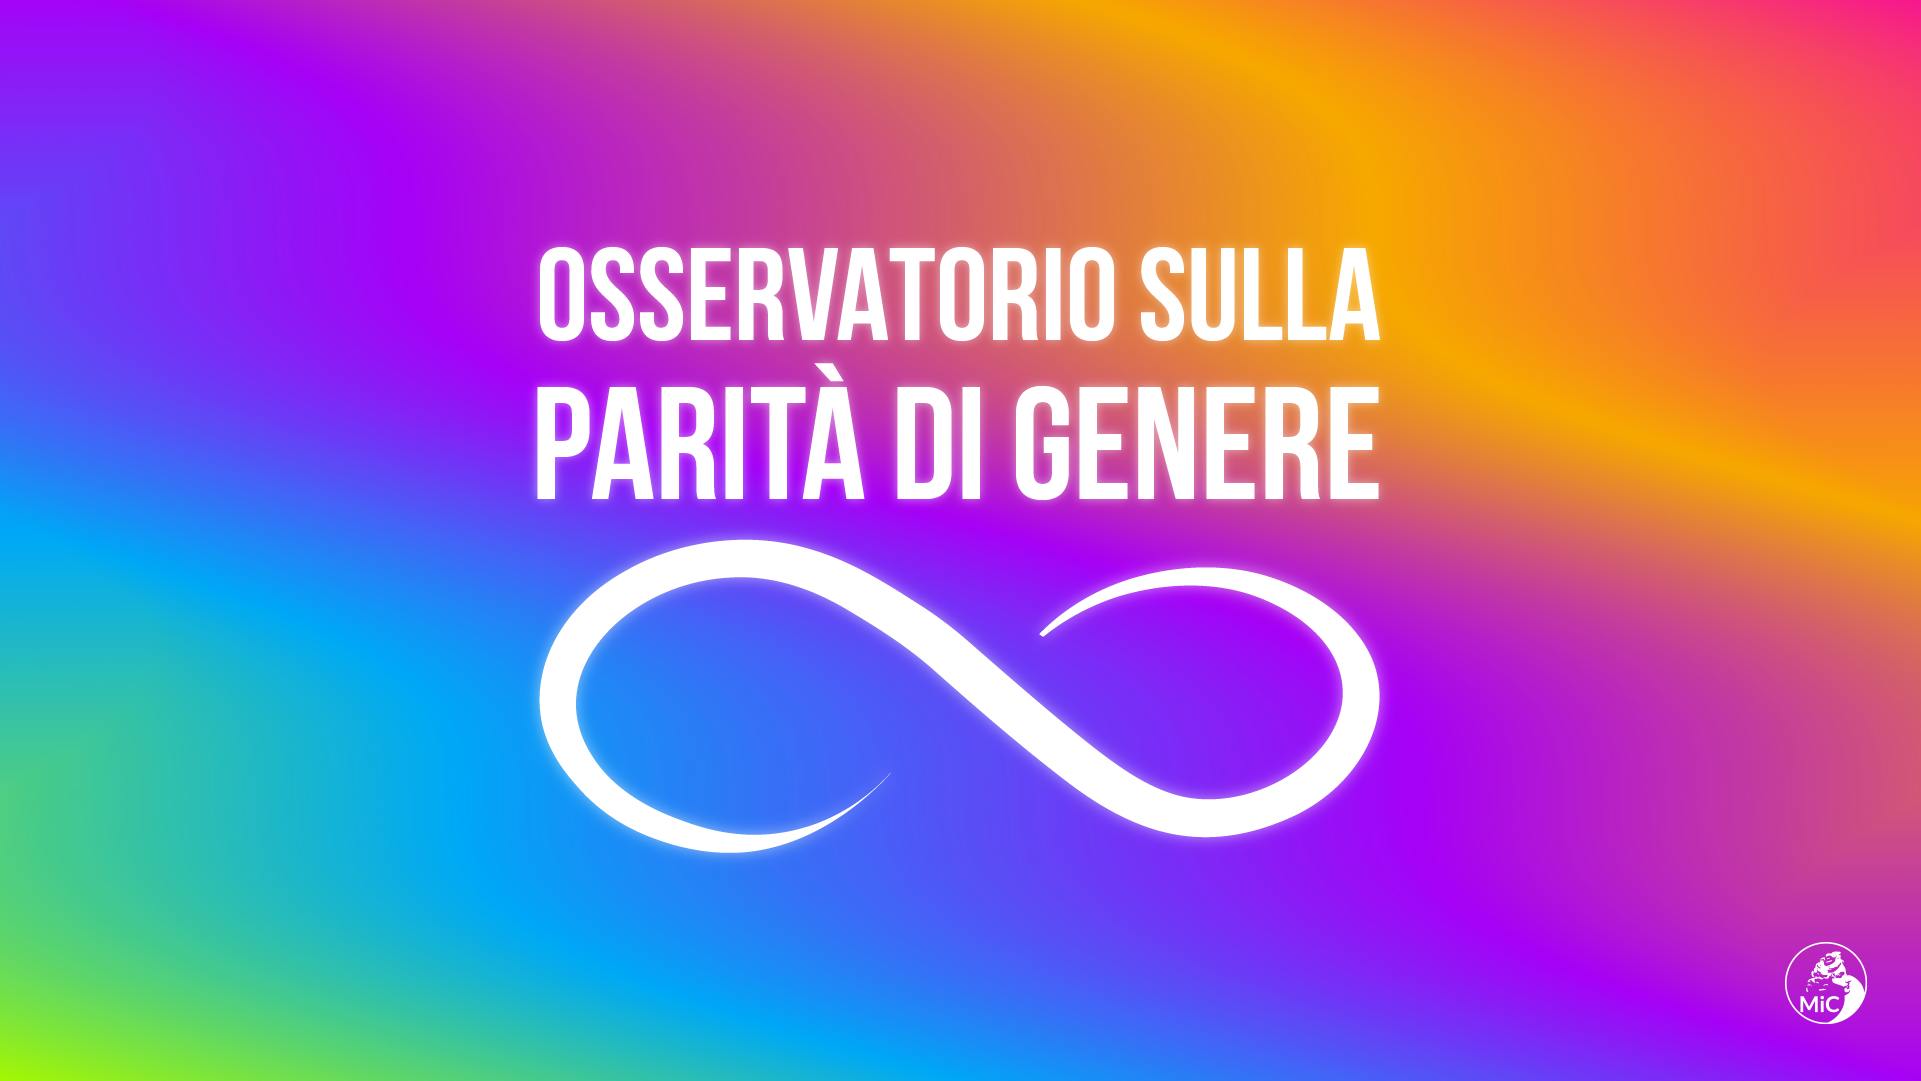 Osservatorio sulla parità di genere logo